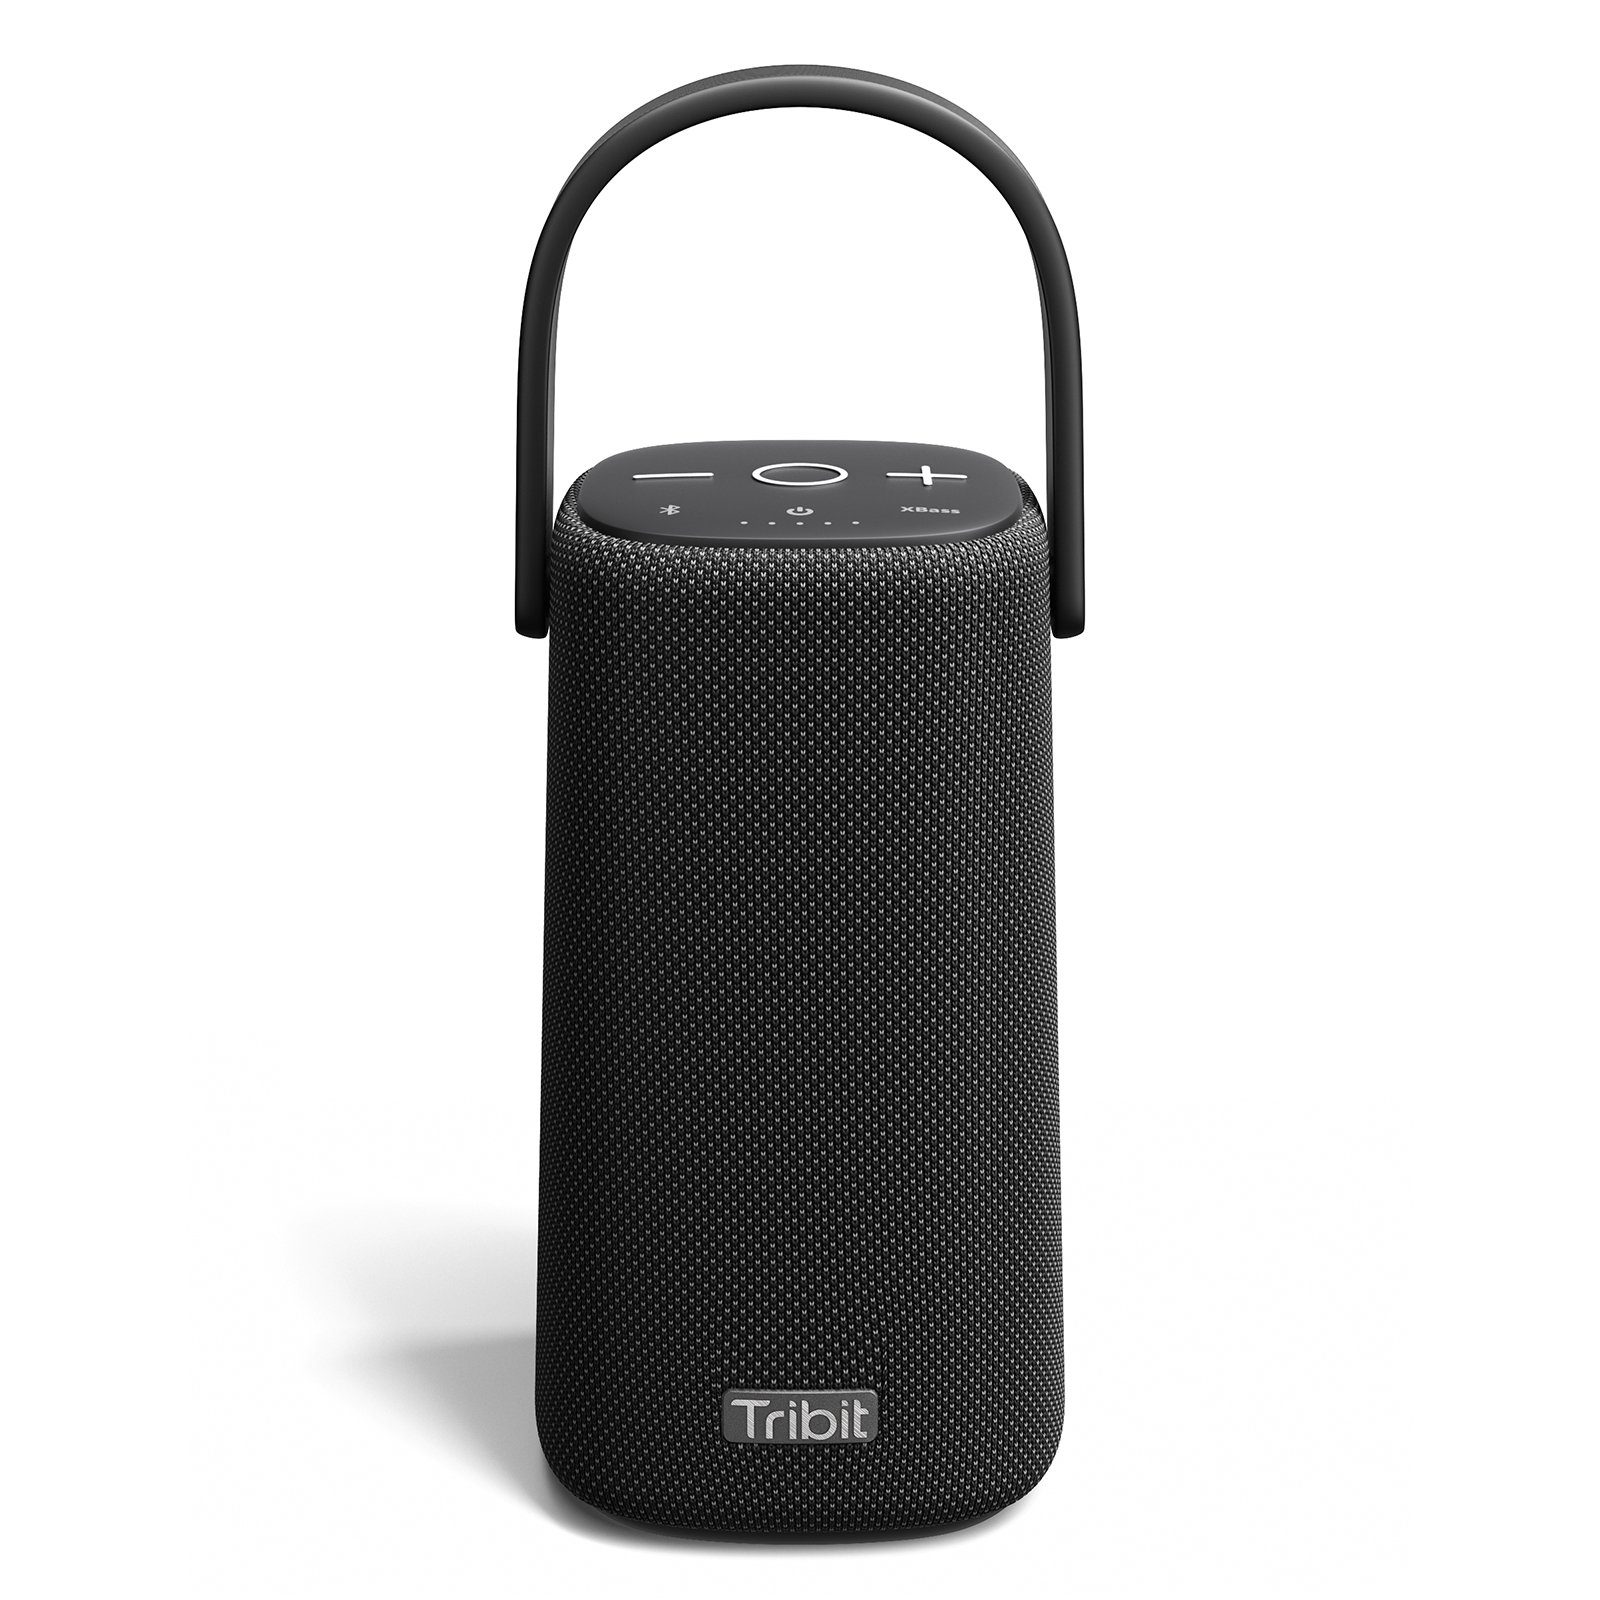 mit 360° HiFi mit Tragbarer (Bluetooth, HiFi Soundqualität) 360° Soundqualität Tribit Lautsprecher StormBox Pro Lautsprecher Bluetooth-Lautsprecher Tragbarer